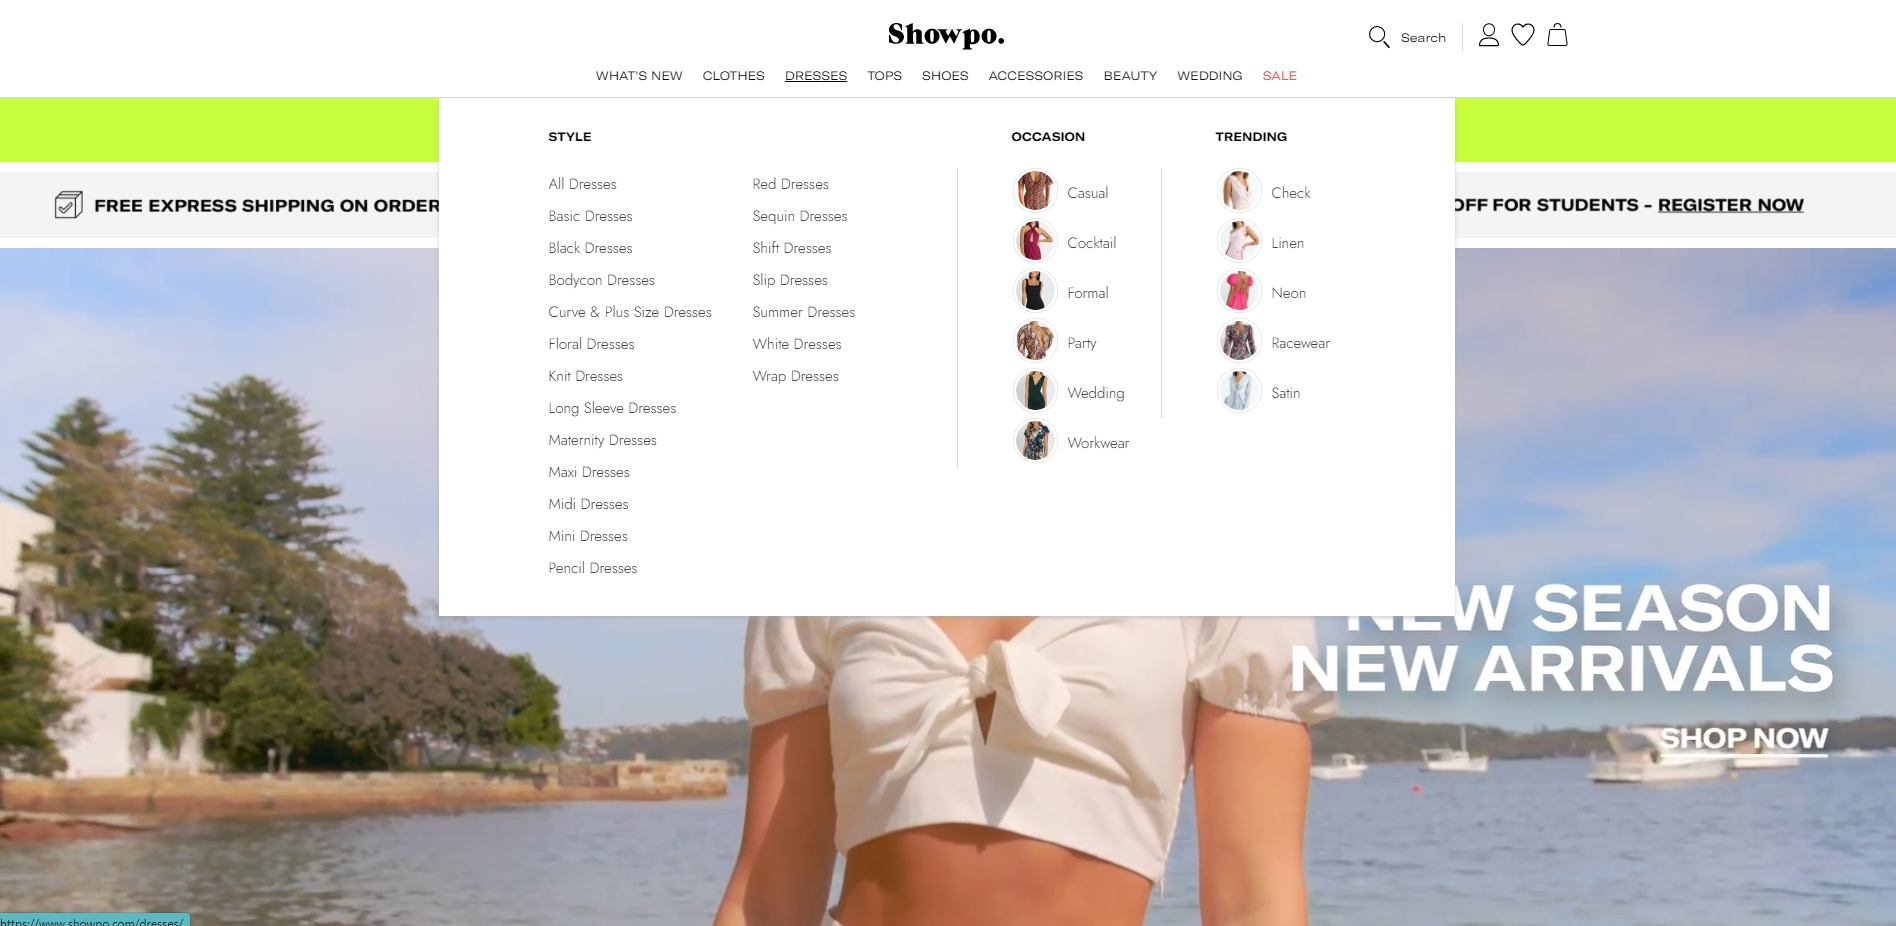 Amazing ecommerce website - Showpo.